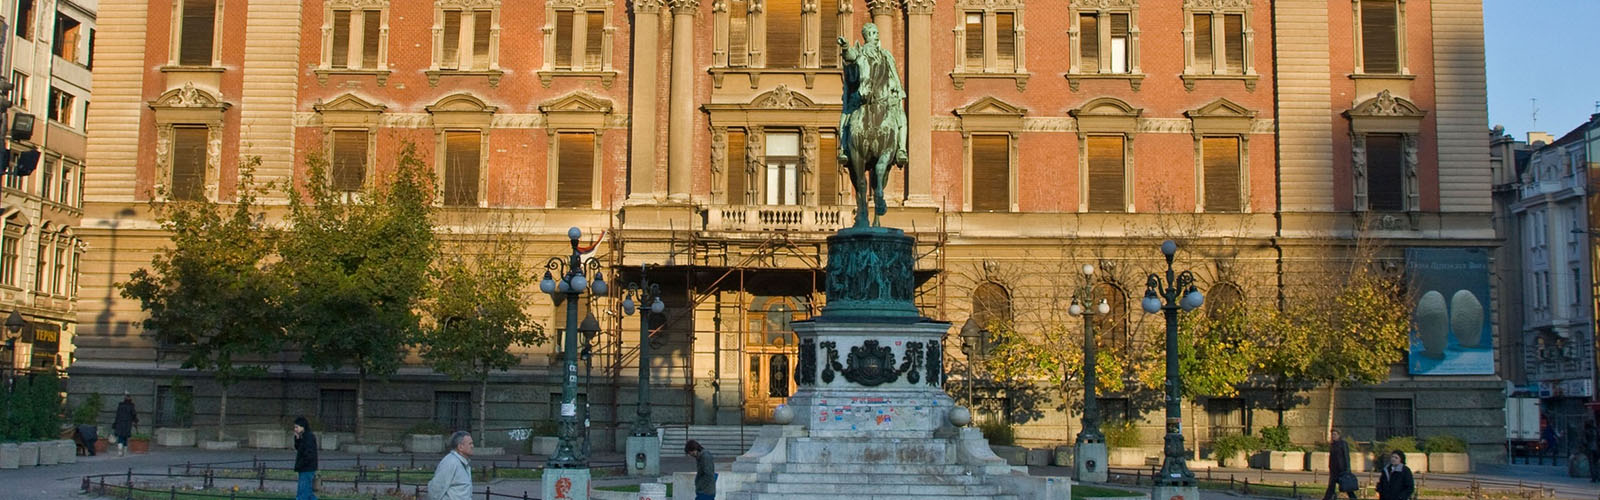 Concierge Belgrade | Narodni muzej